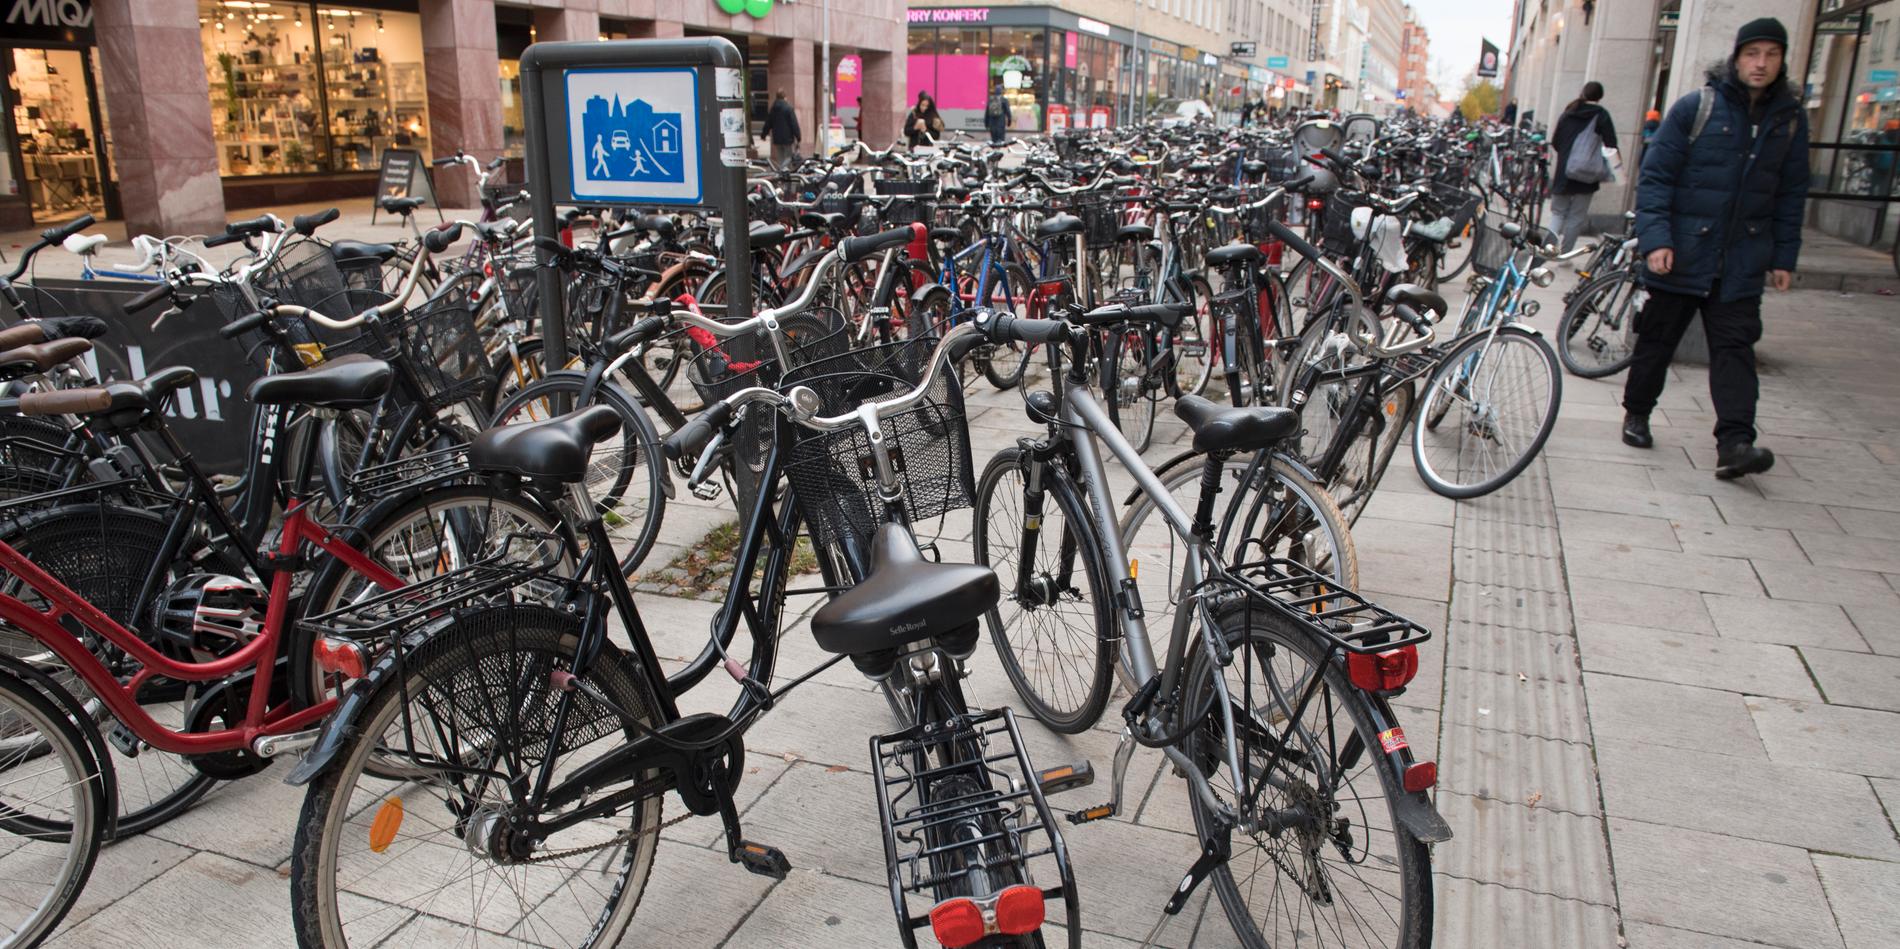 Fortsatt cykelkaos i Uppsala. Nu lappas felparkerade cyklar och fraktas bort. 